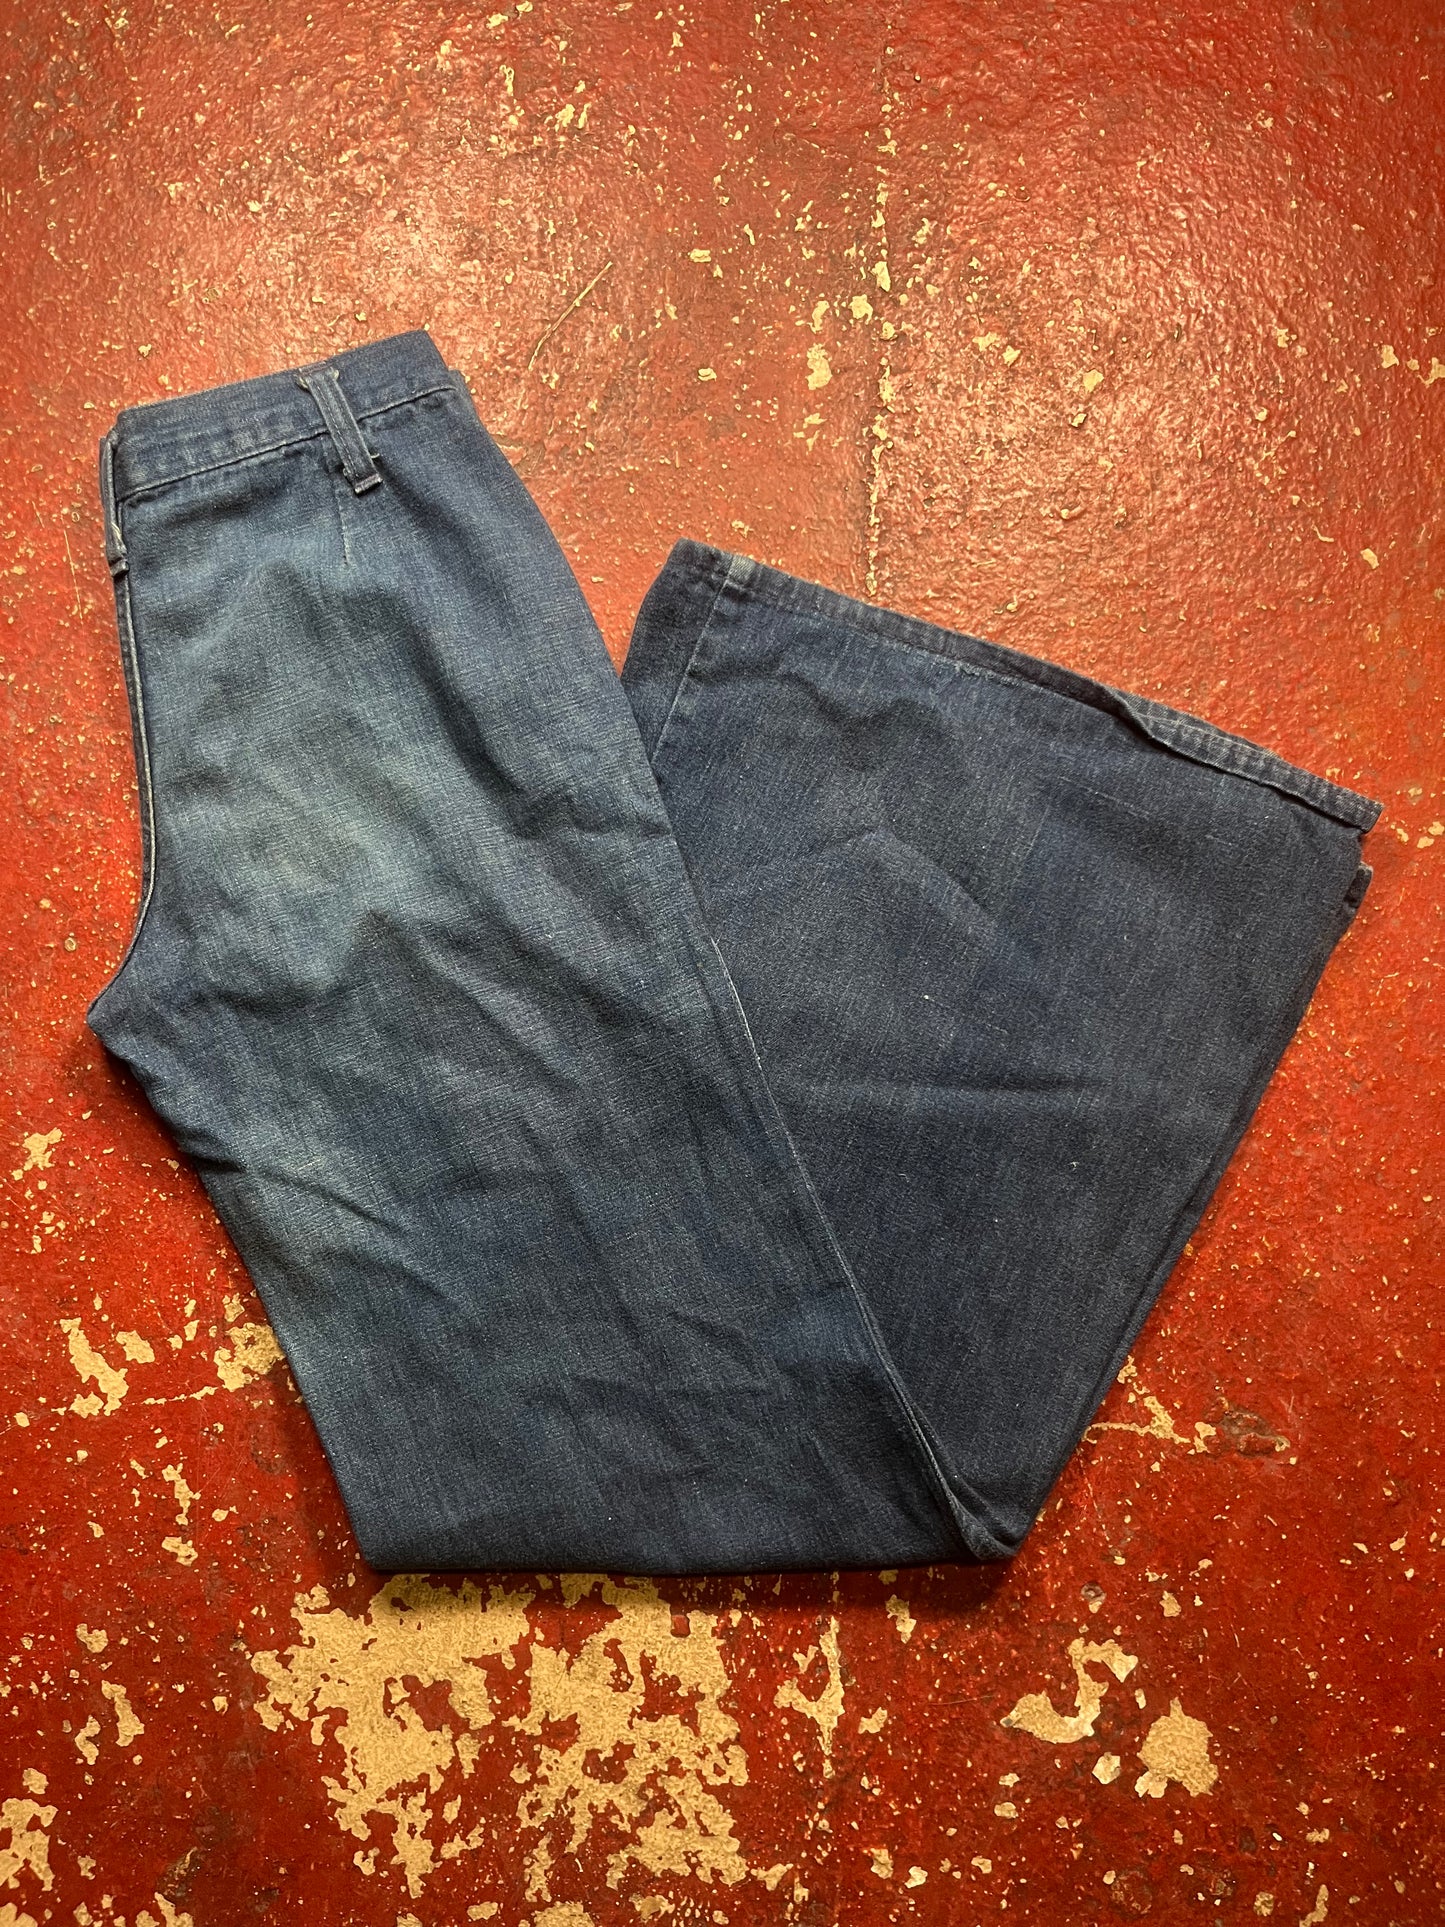 70s Bell Bottom Jeans